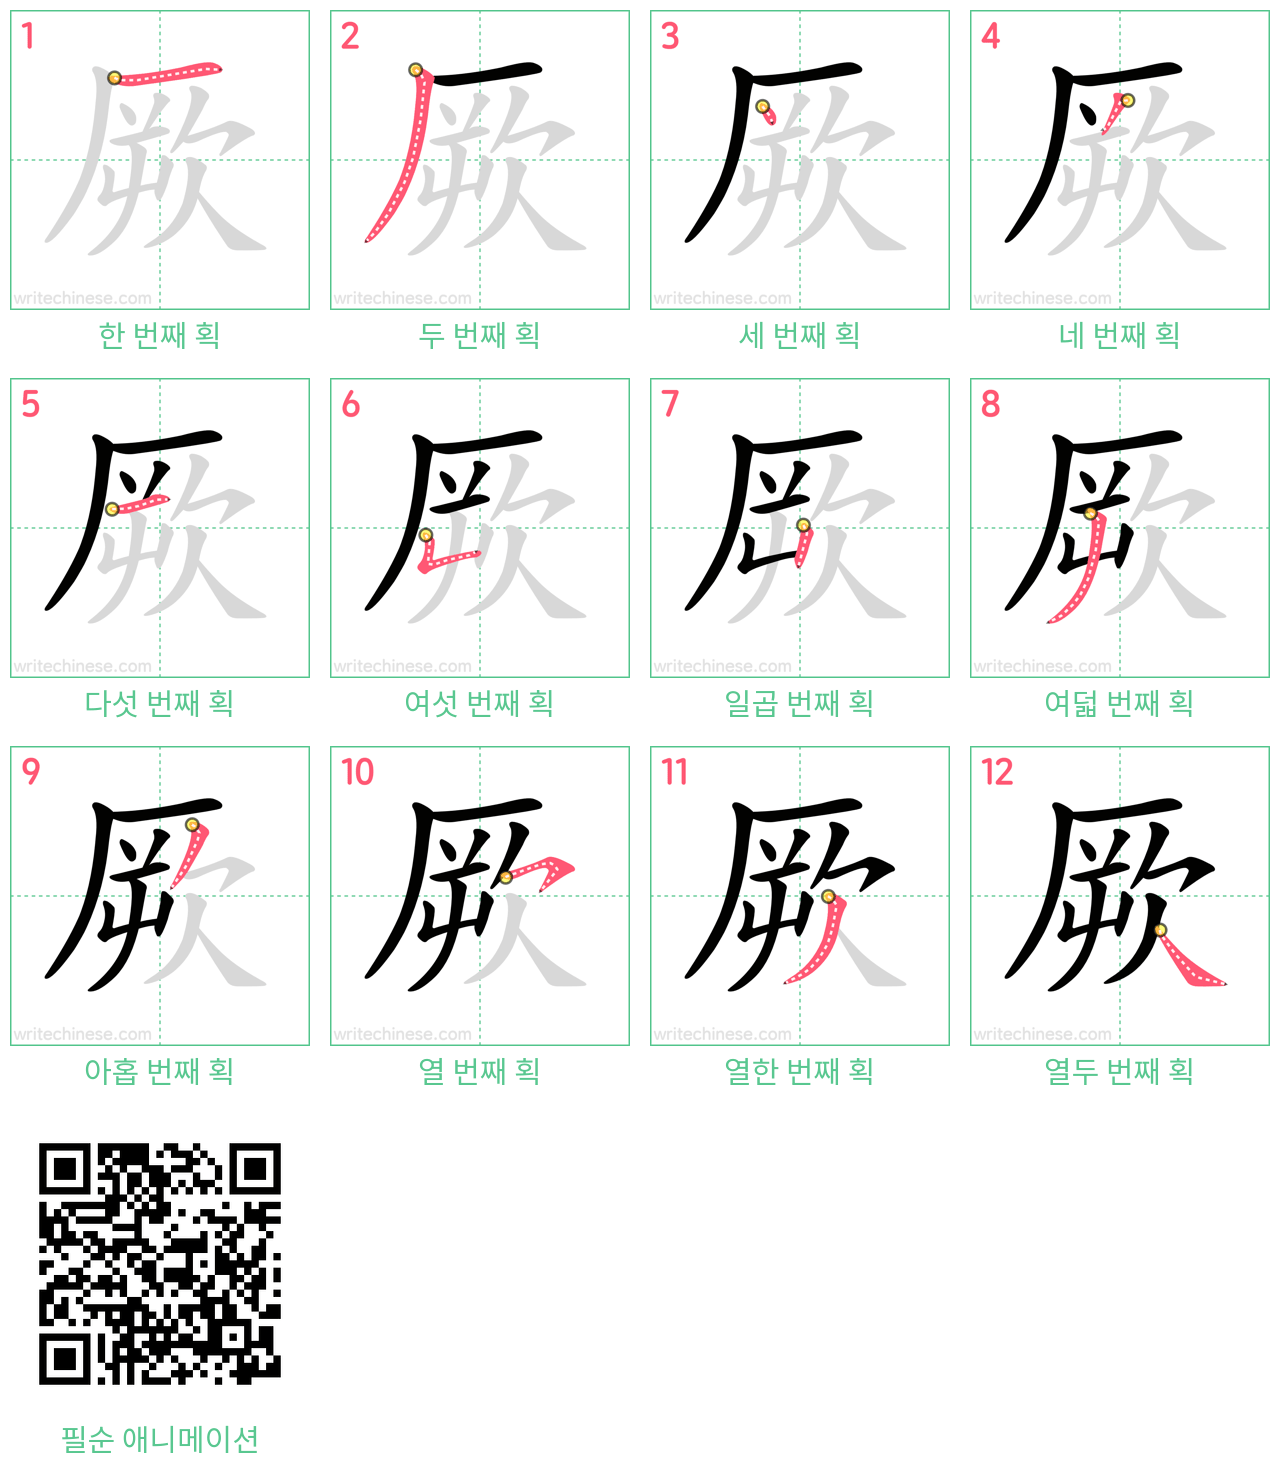 厥 step-by-step stroke order diagrams